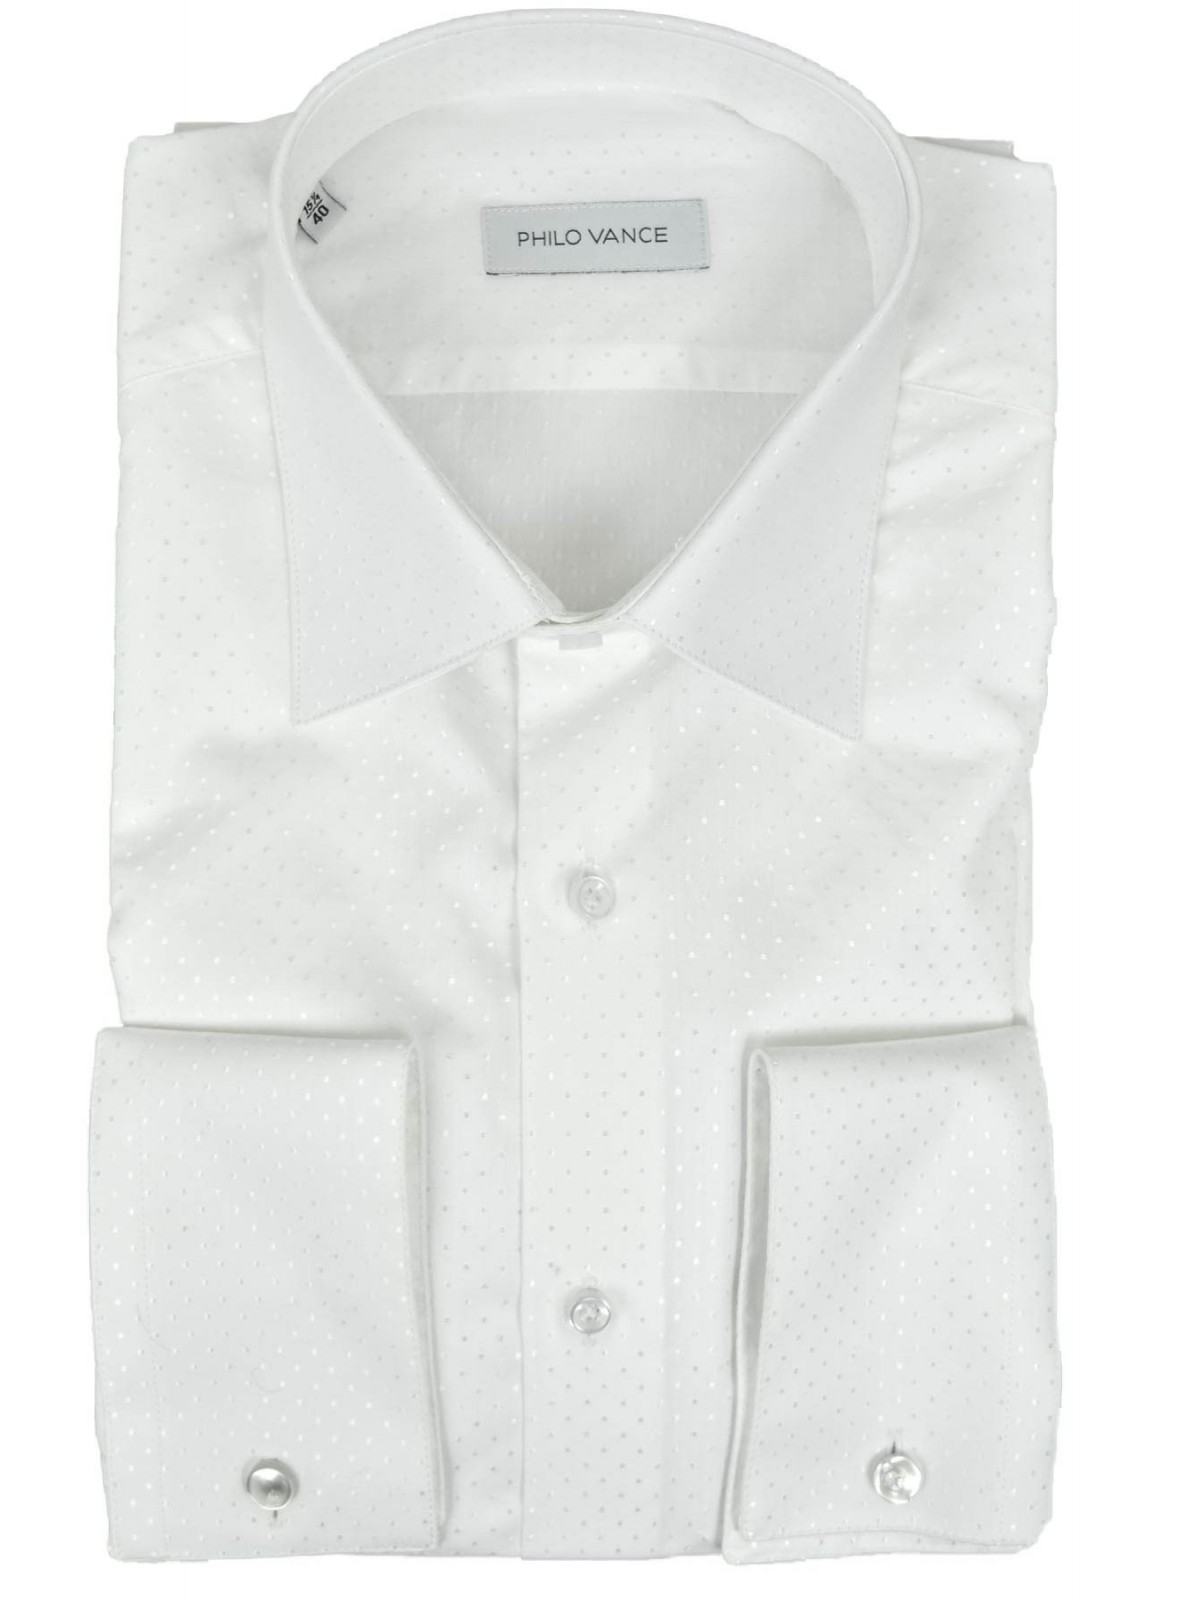 Elegante Camicia Uomo Cerimonia Pois Bianco su Bianco - Philo Vance - Acerra